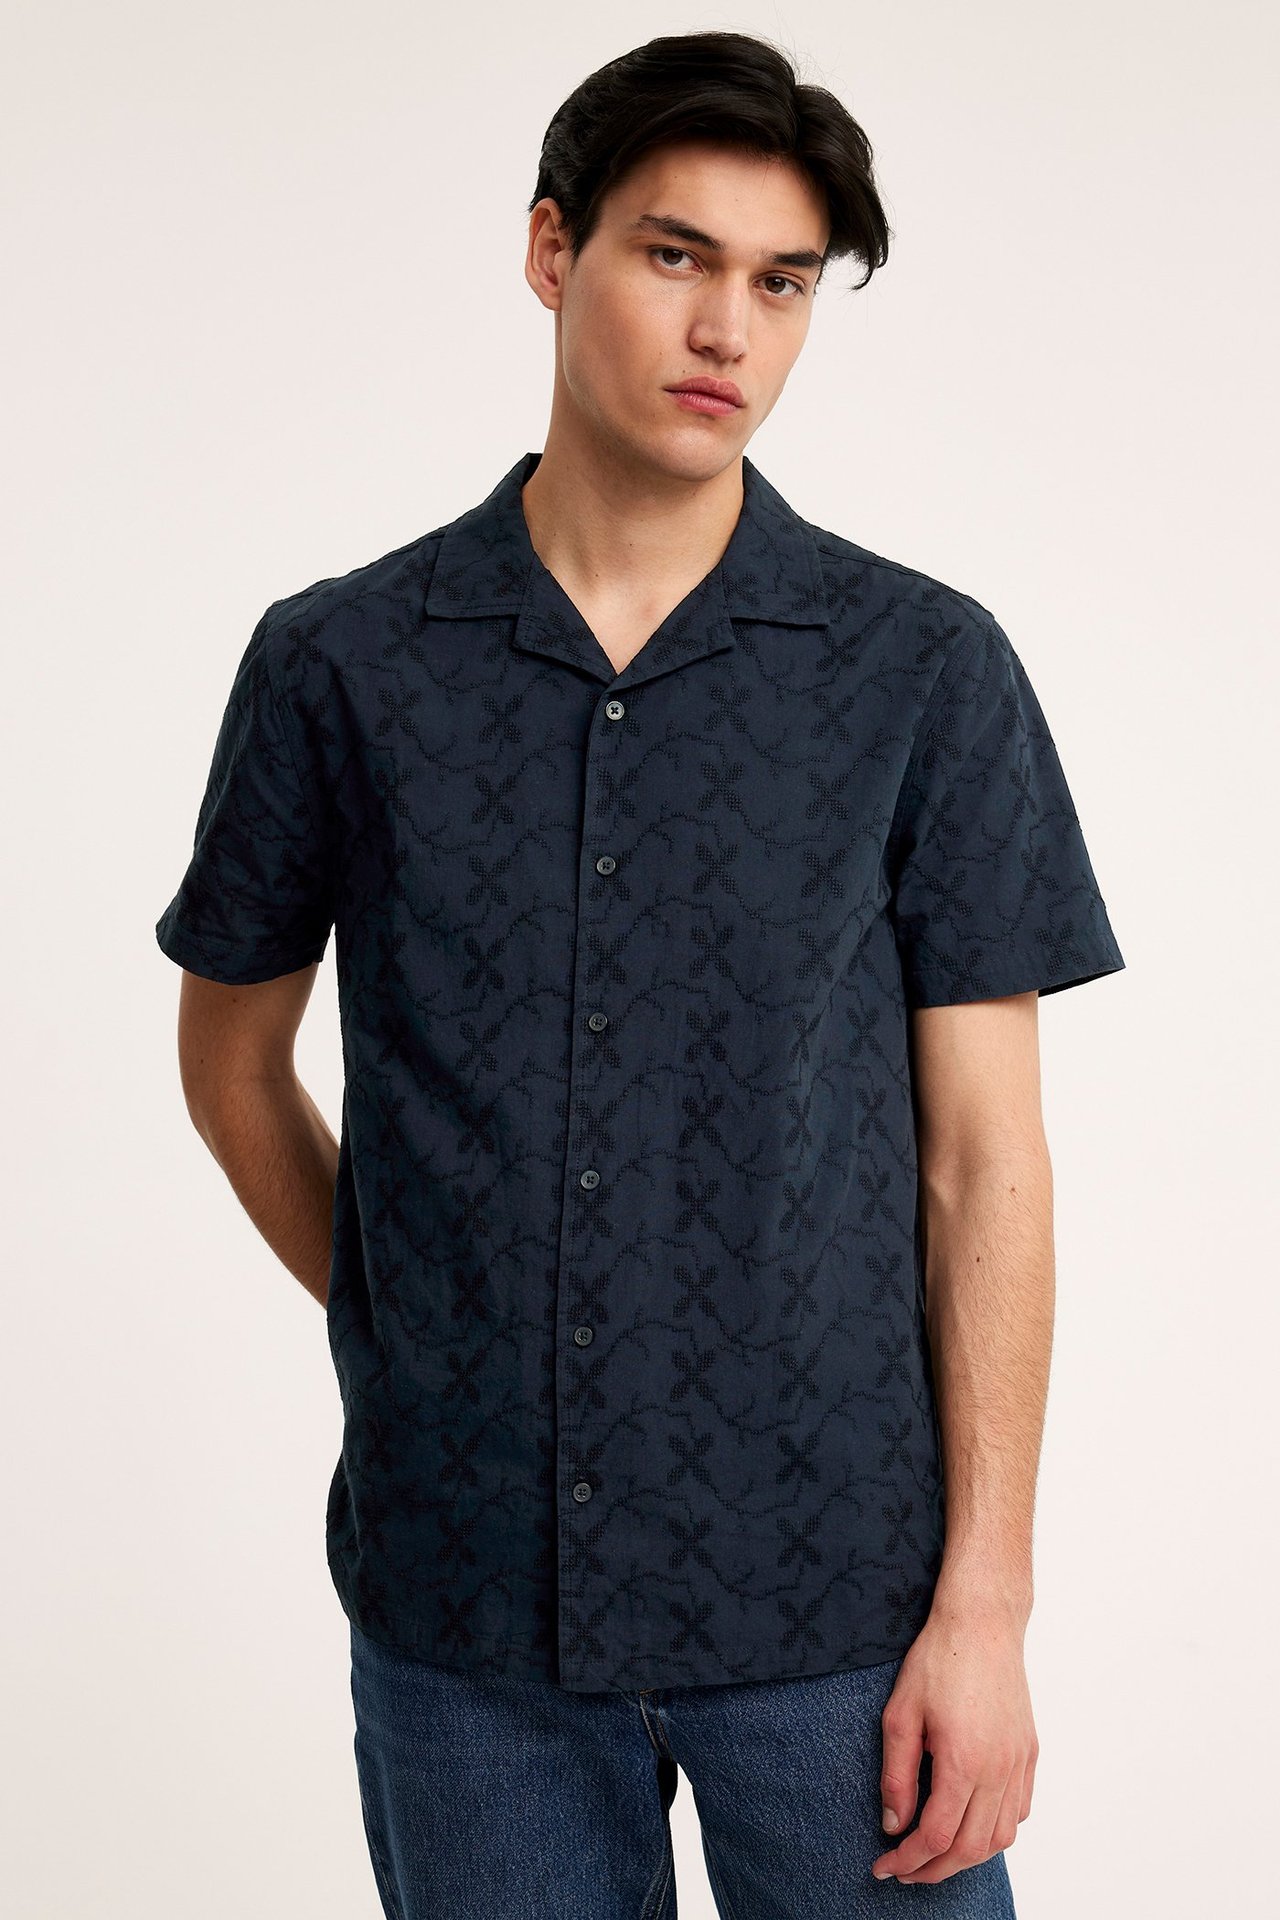 Resortskjorta med brodyr - Mörkblå - 189cm / Storlek: M - 1